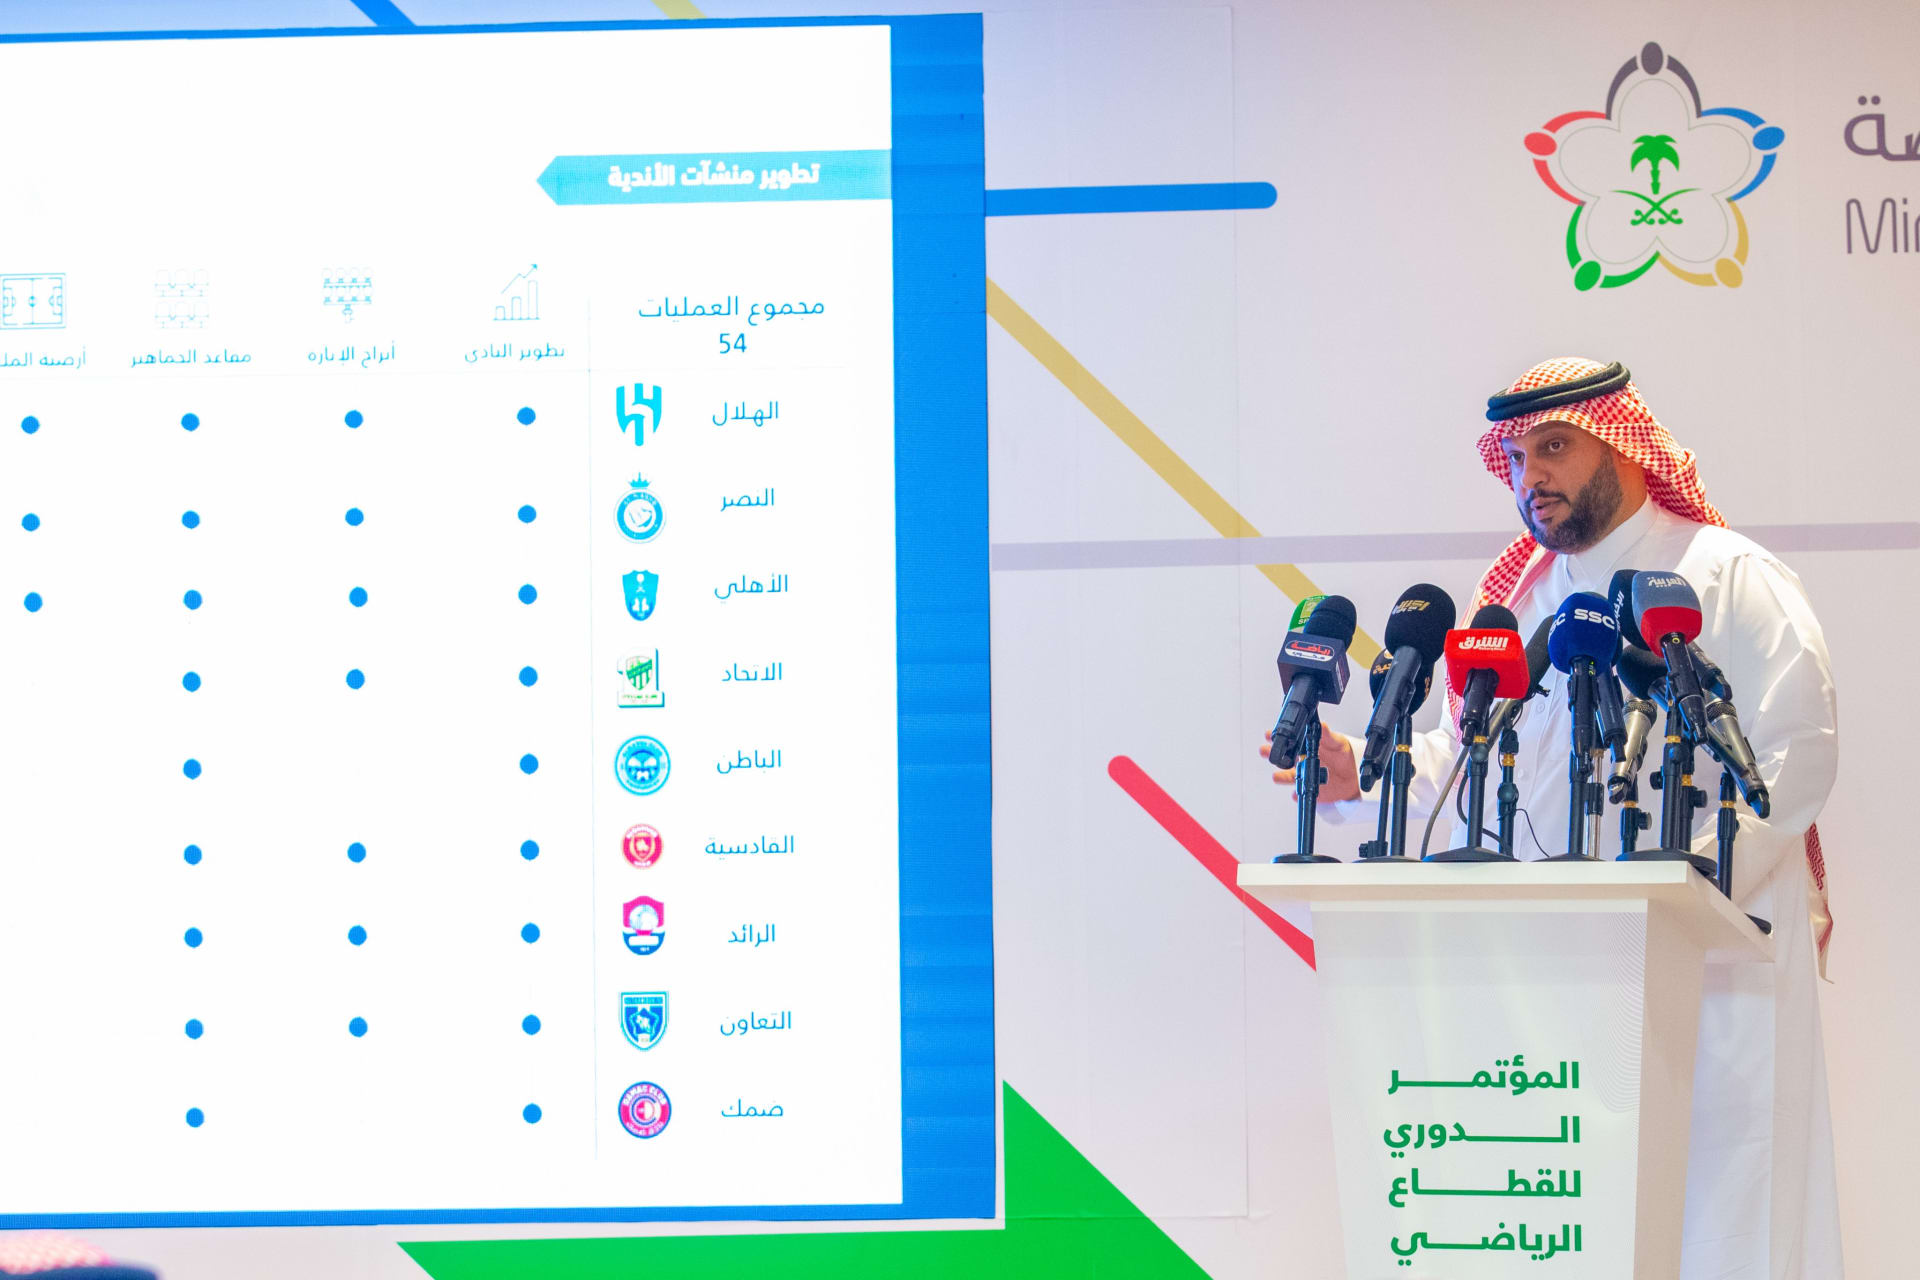 ثامر باسنبل، وكيل المنشآت الرياضية في وزارة الرياضة السعودية